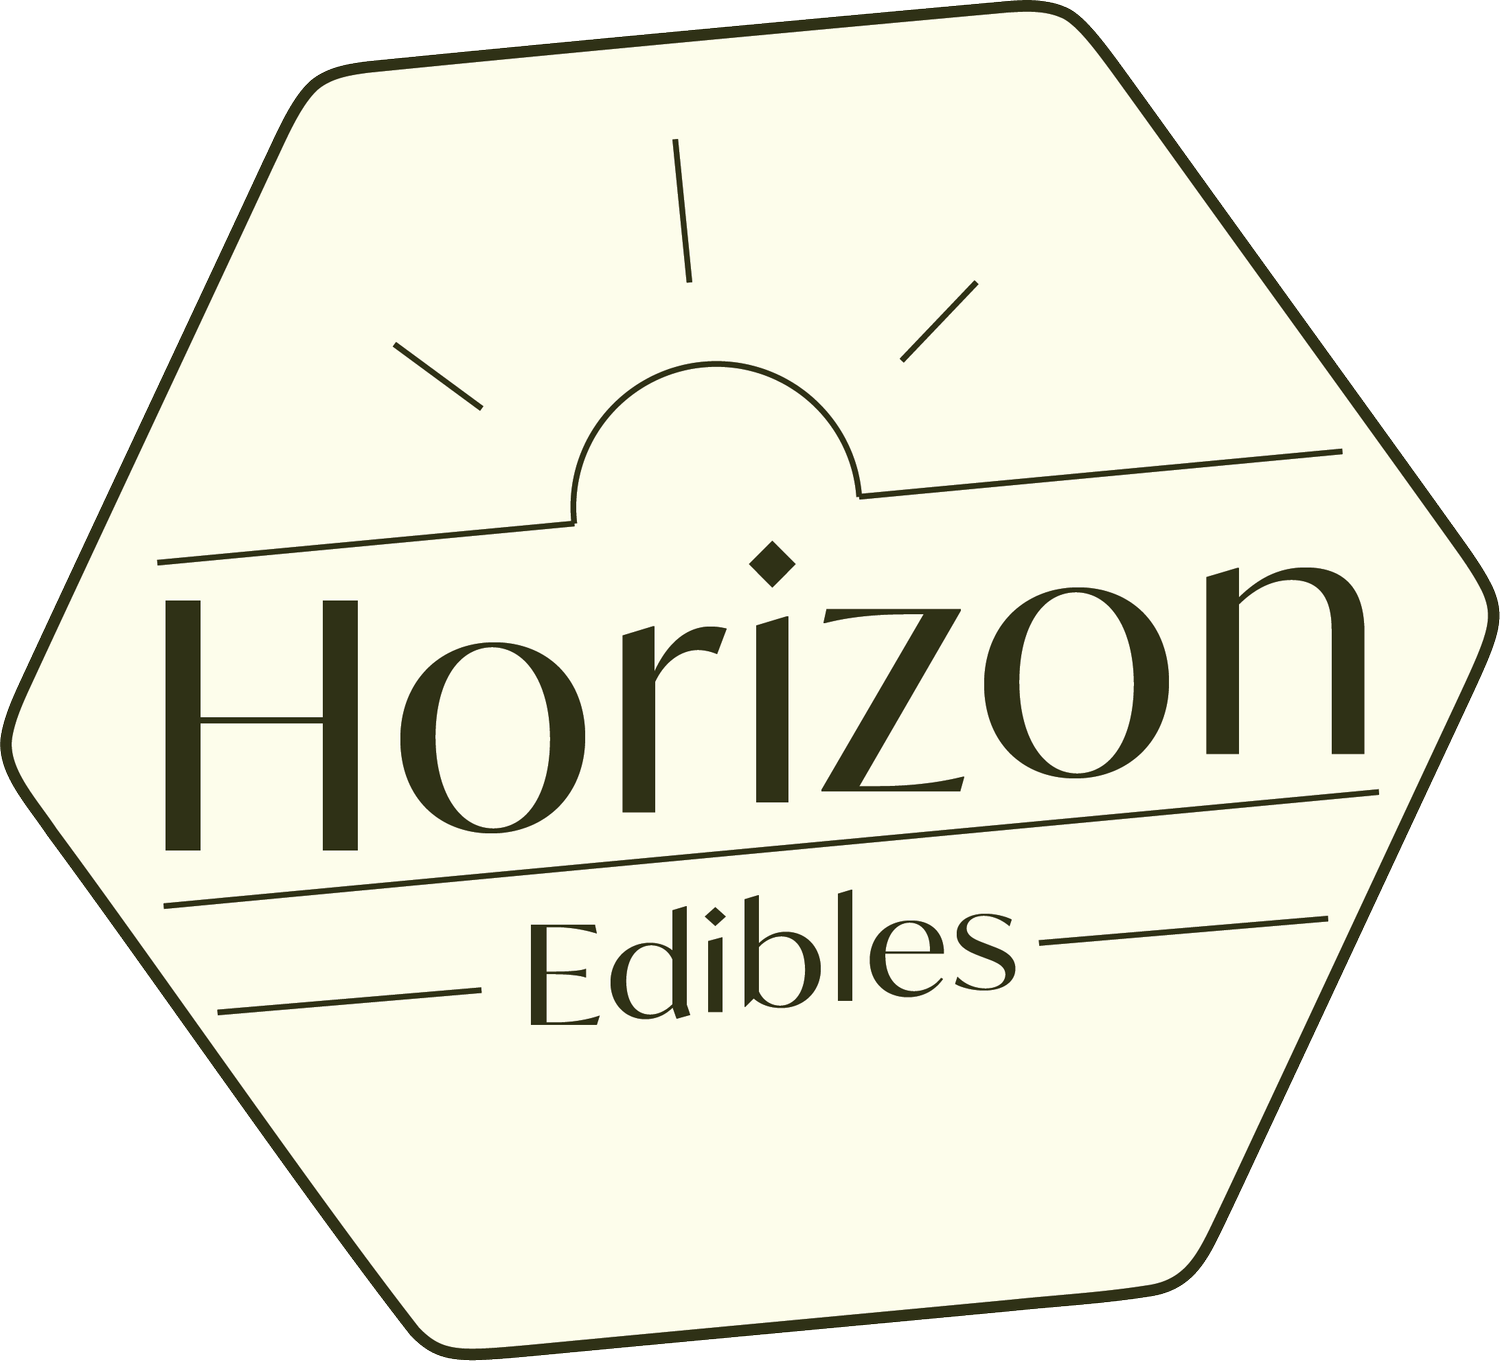 Horizon Edibles